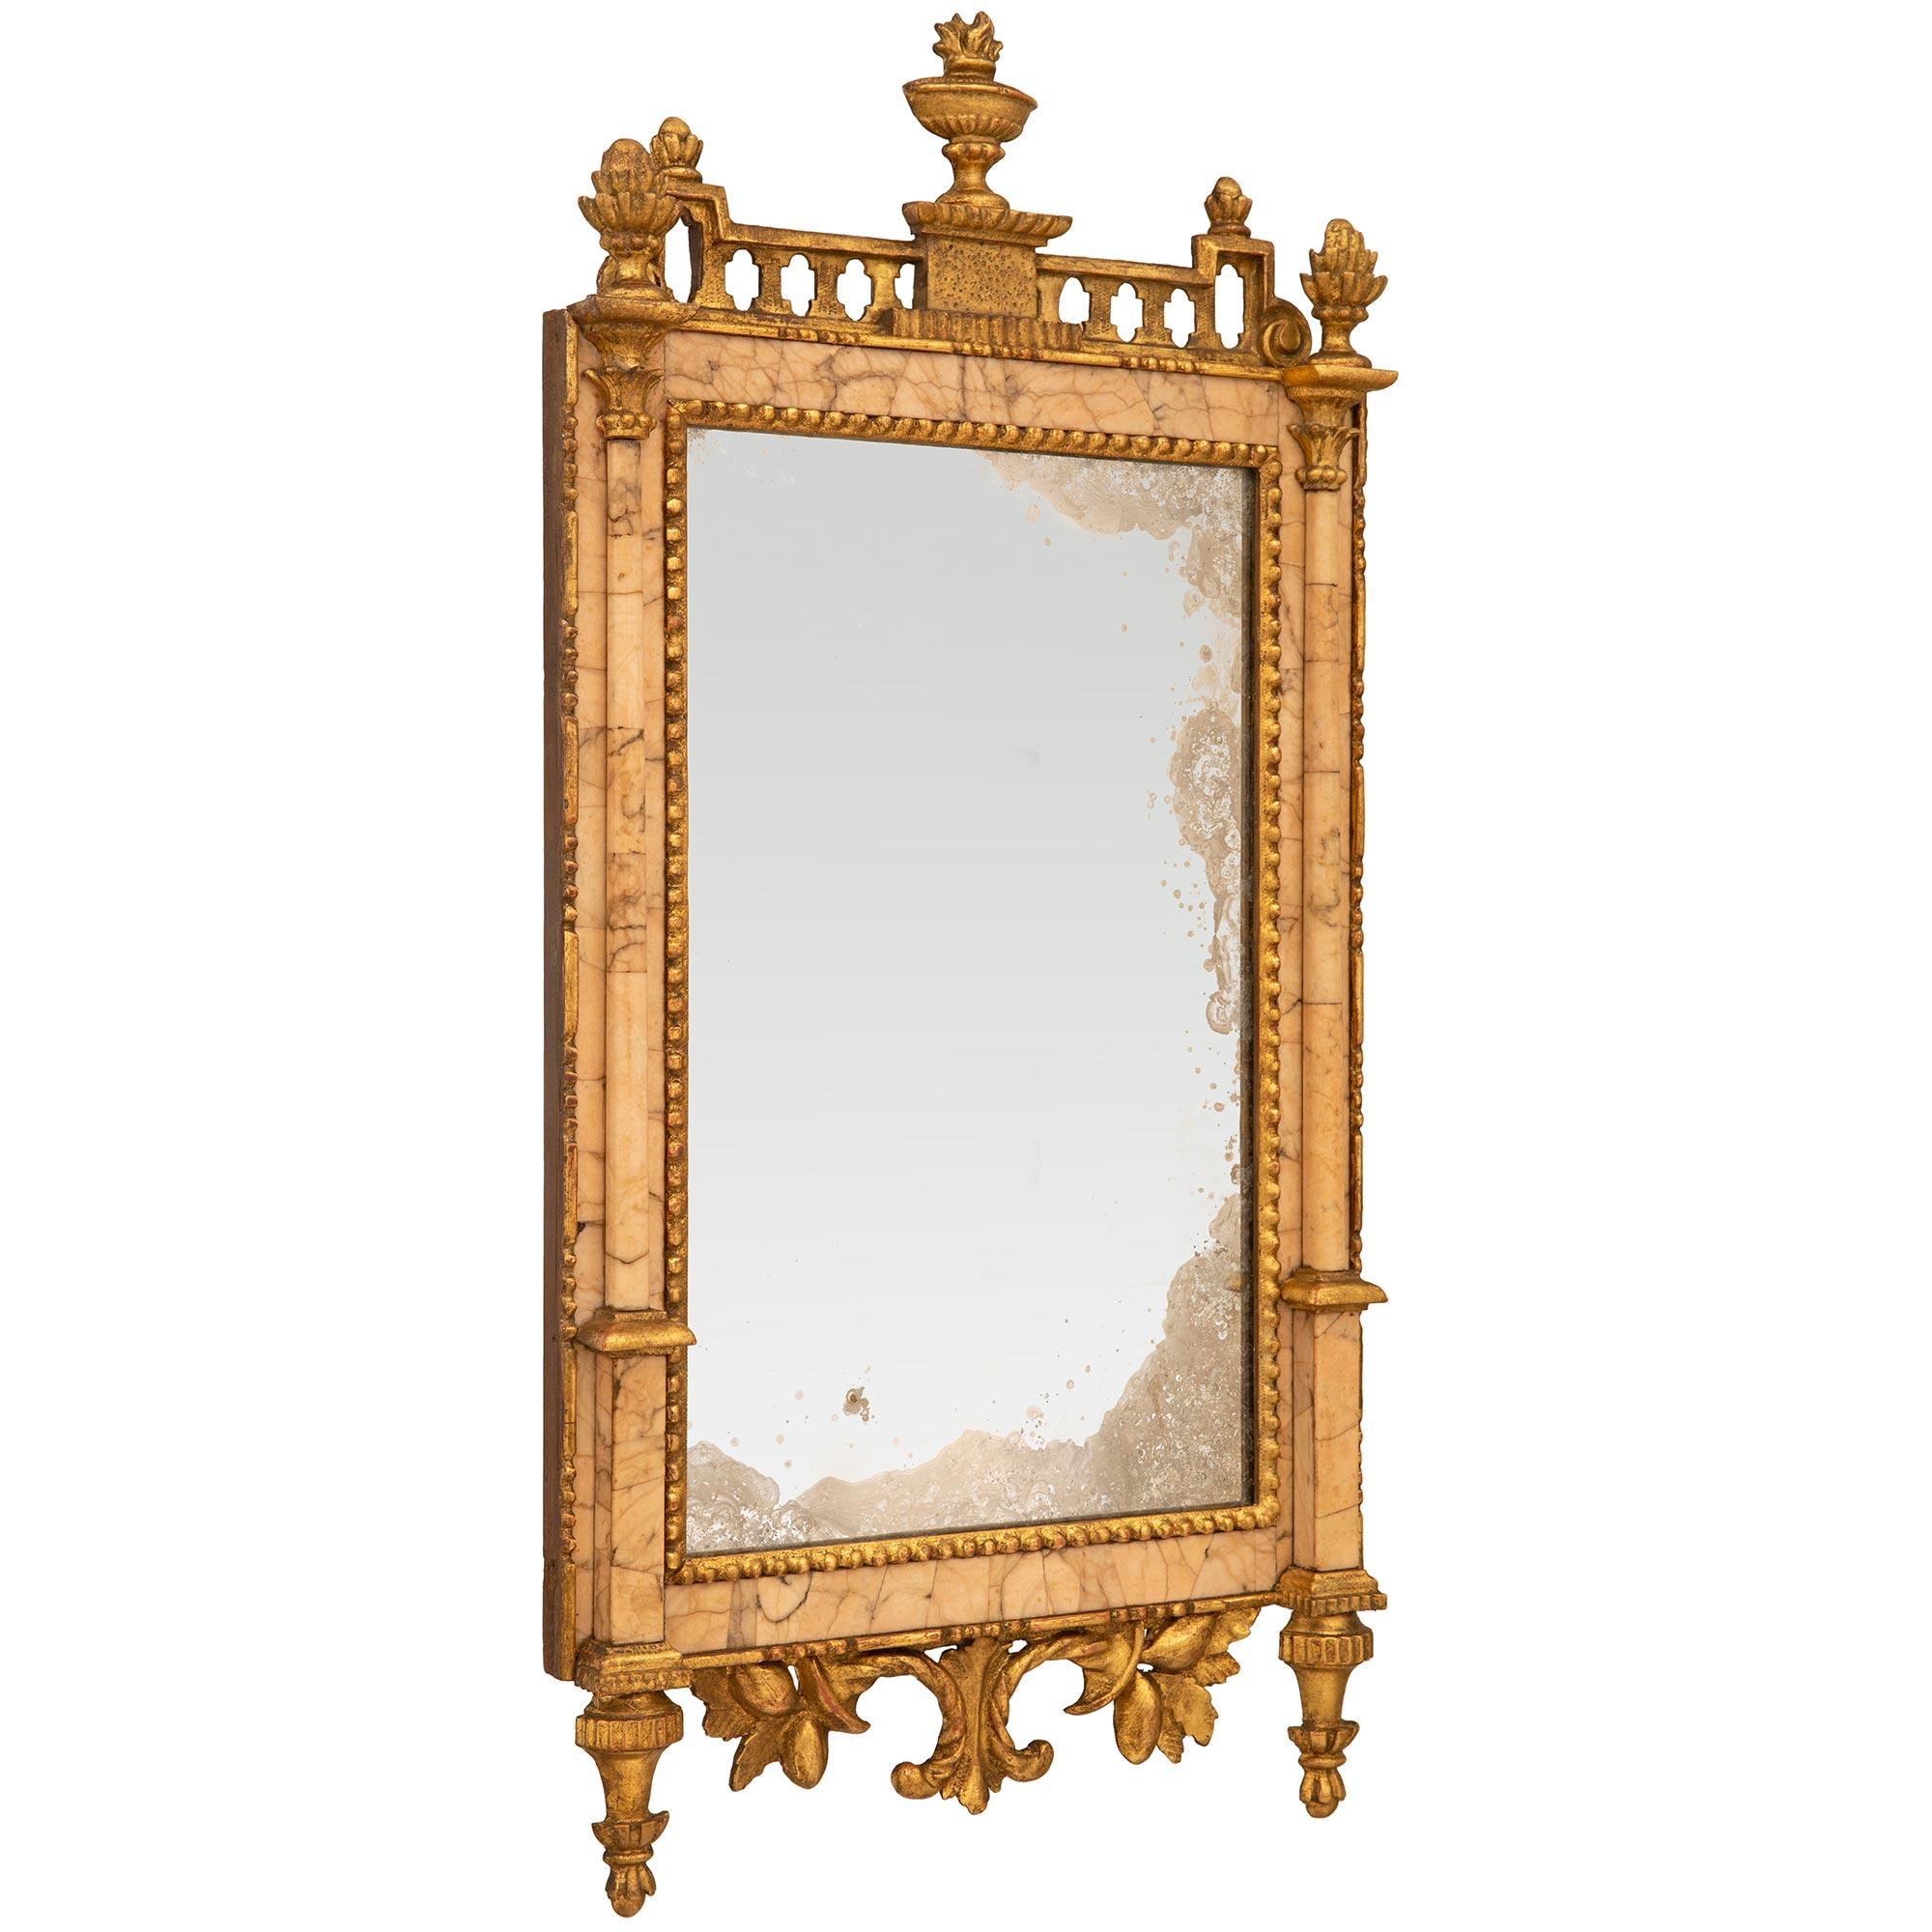 Très élégant et unique miroir en bois doré et marbre Lumachella Carnina O Carnacina d'époque Louis XVI. Ce miroir rectangulaire, qui a conservé toute sa glace, son marbre et sa dorure d'origine, est surélevé par deux supports en bois doré en forme